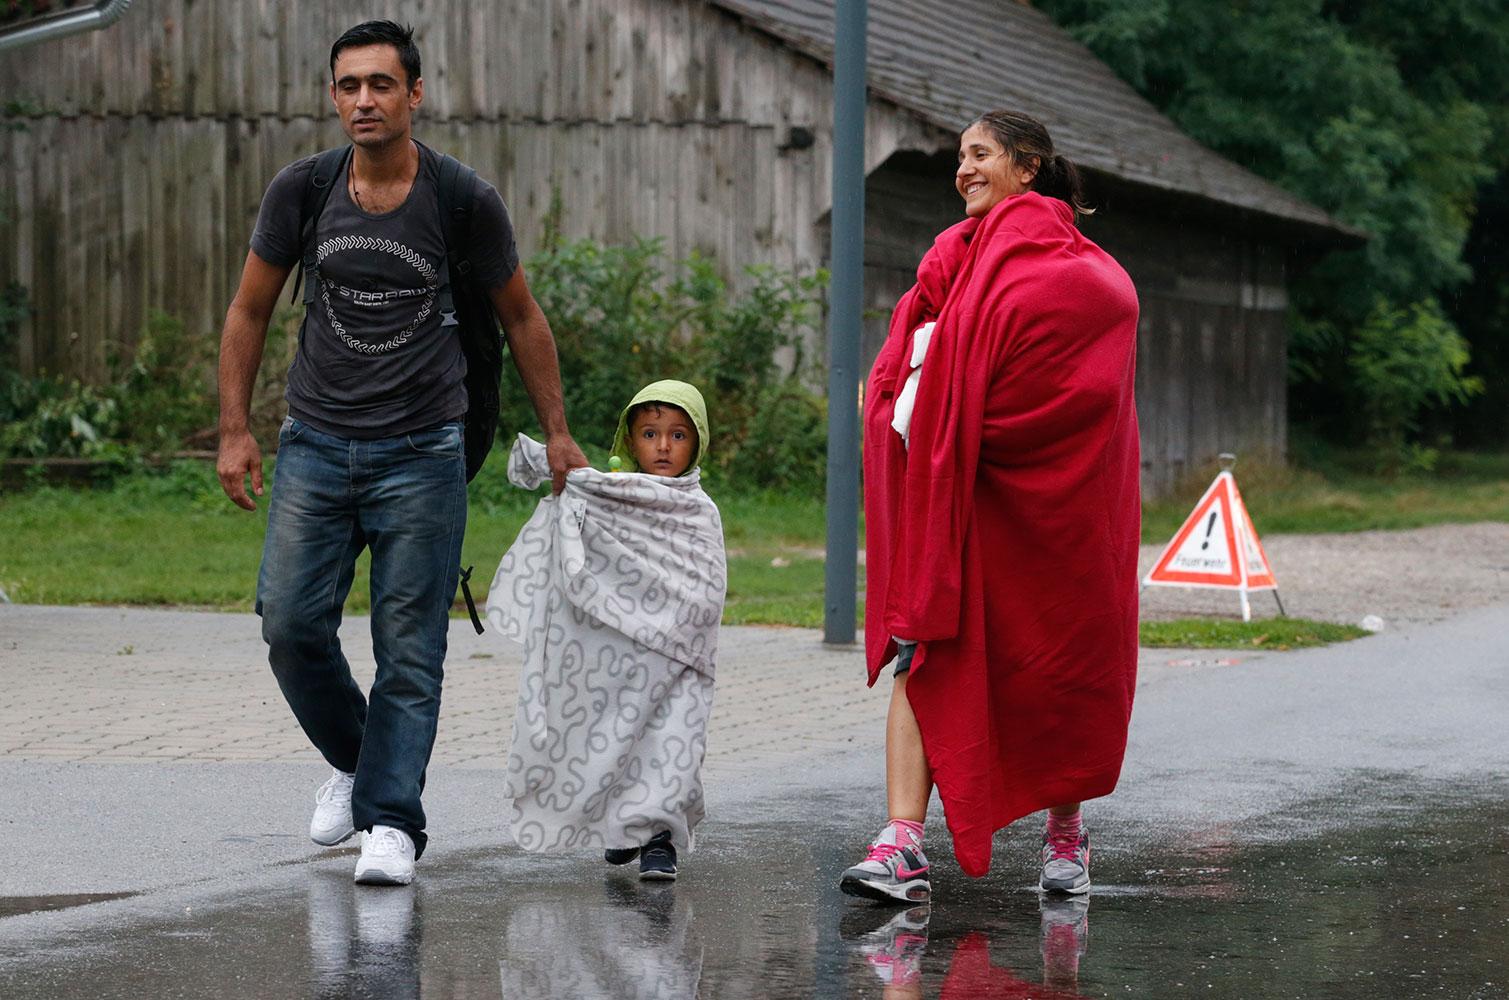 En syrisk familj framme i Nickelsdorf i Österrike.